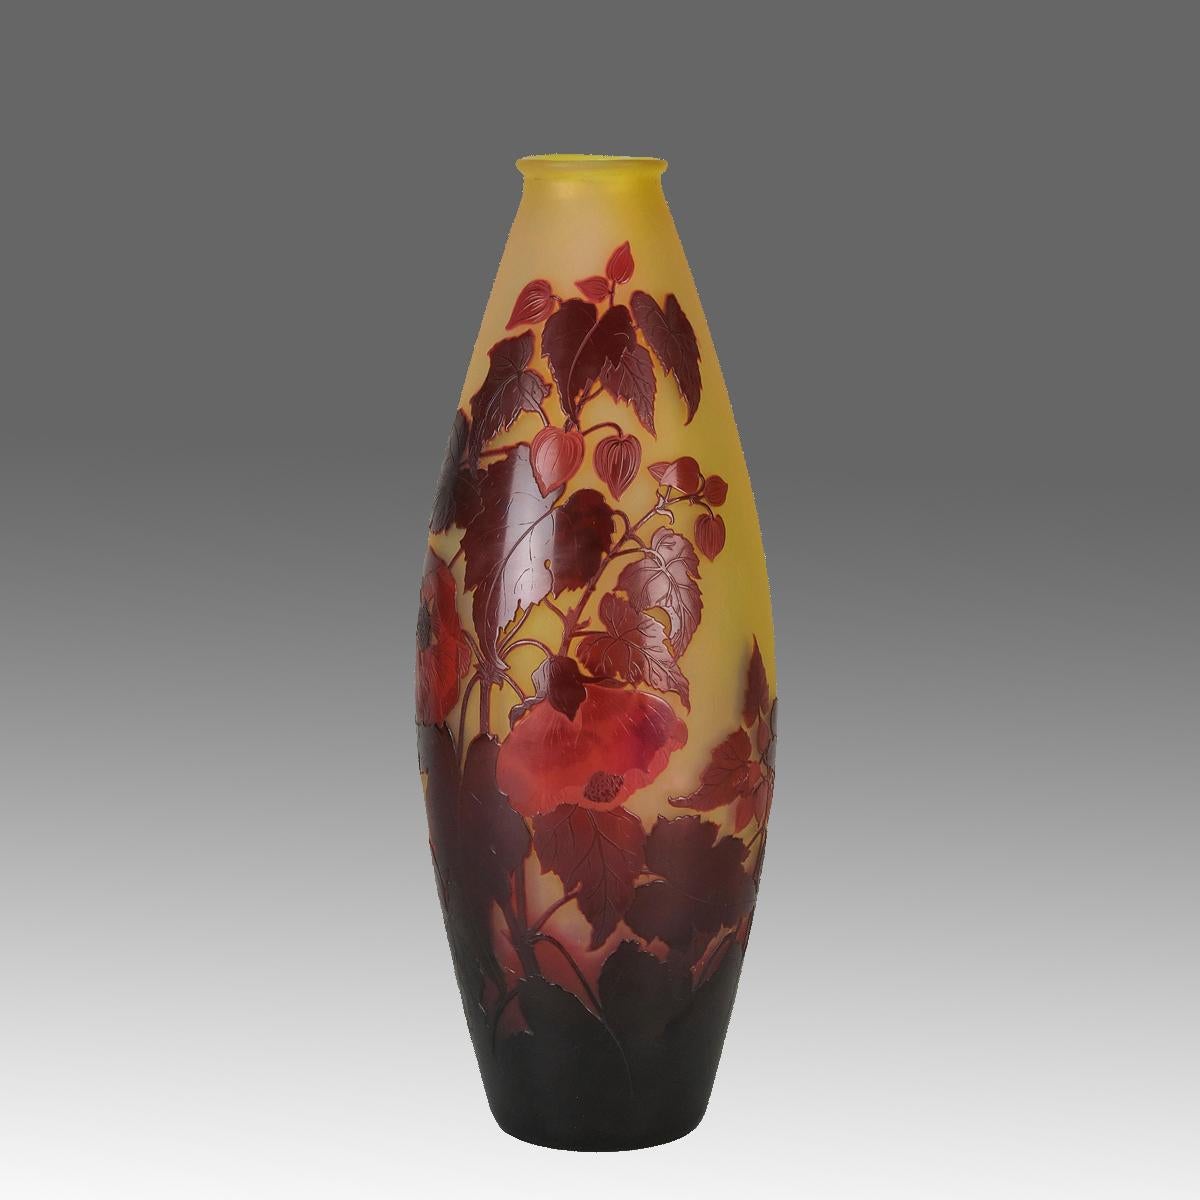 Un joli vase en verre camée français de la fin du 19e siècle, décoré de fleurs rouge foncé et bordeaux sur un fond jaune panaché. Les détails et les couleurs sont excellents. L'œuvre est signée Galle en camée.

INFORMATIONS COMPLÉMENTAIRES
Hauteur :